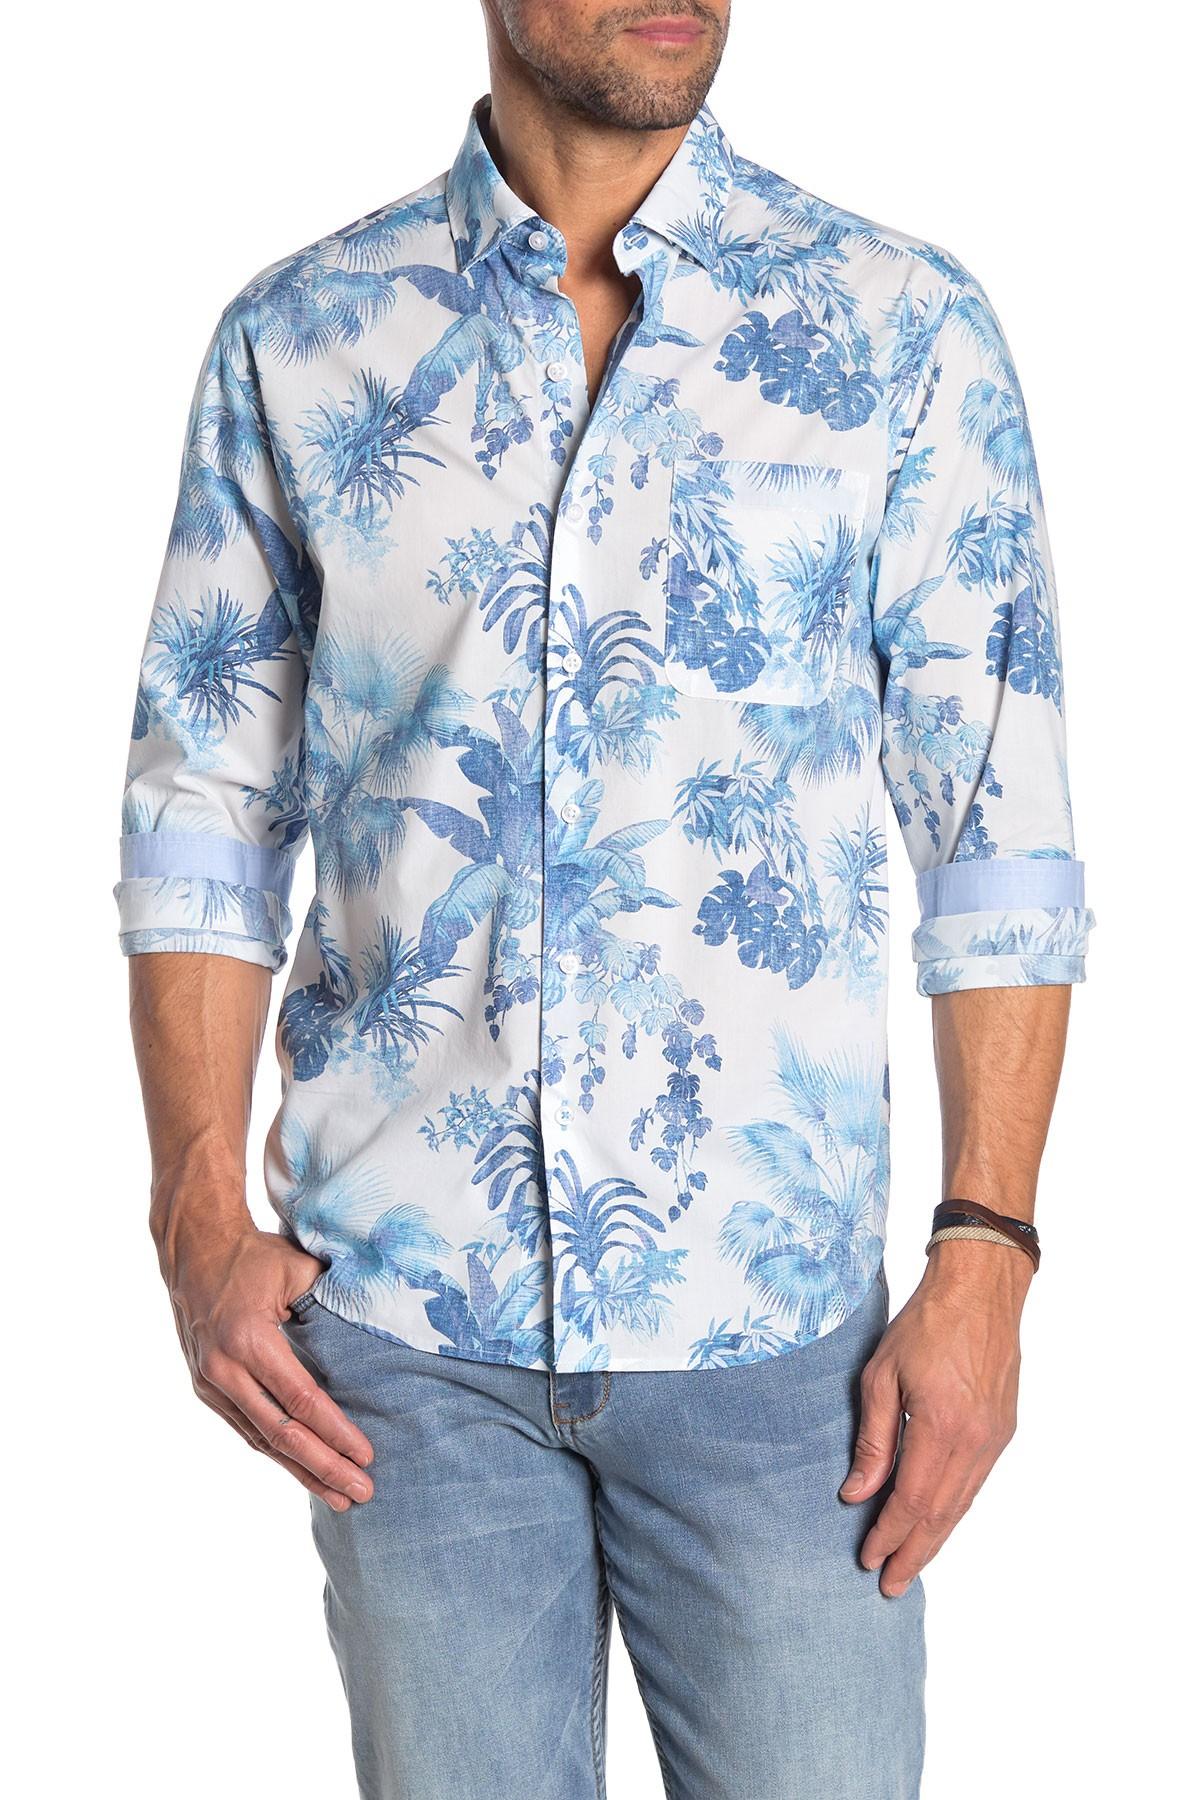 Tommy Bahama Newport Tiare Tropical Long Sleeve Hawaiian Shirt in